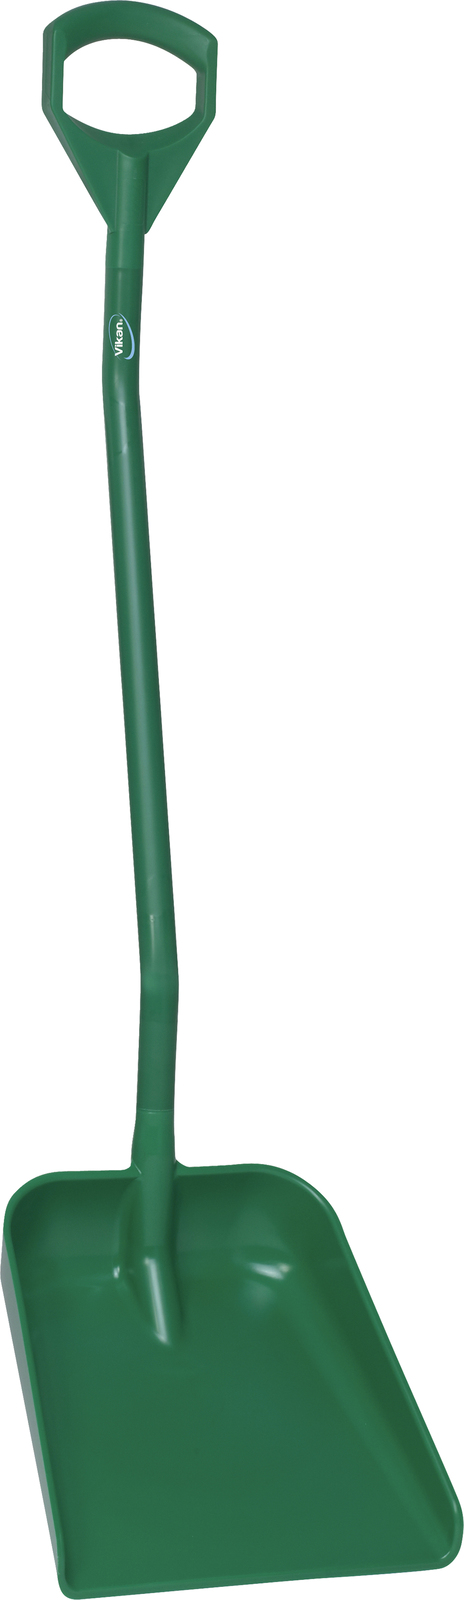 Vikan Shovel, Ergonomic 1310mm Handle